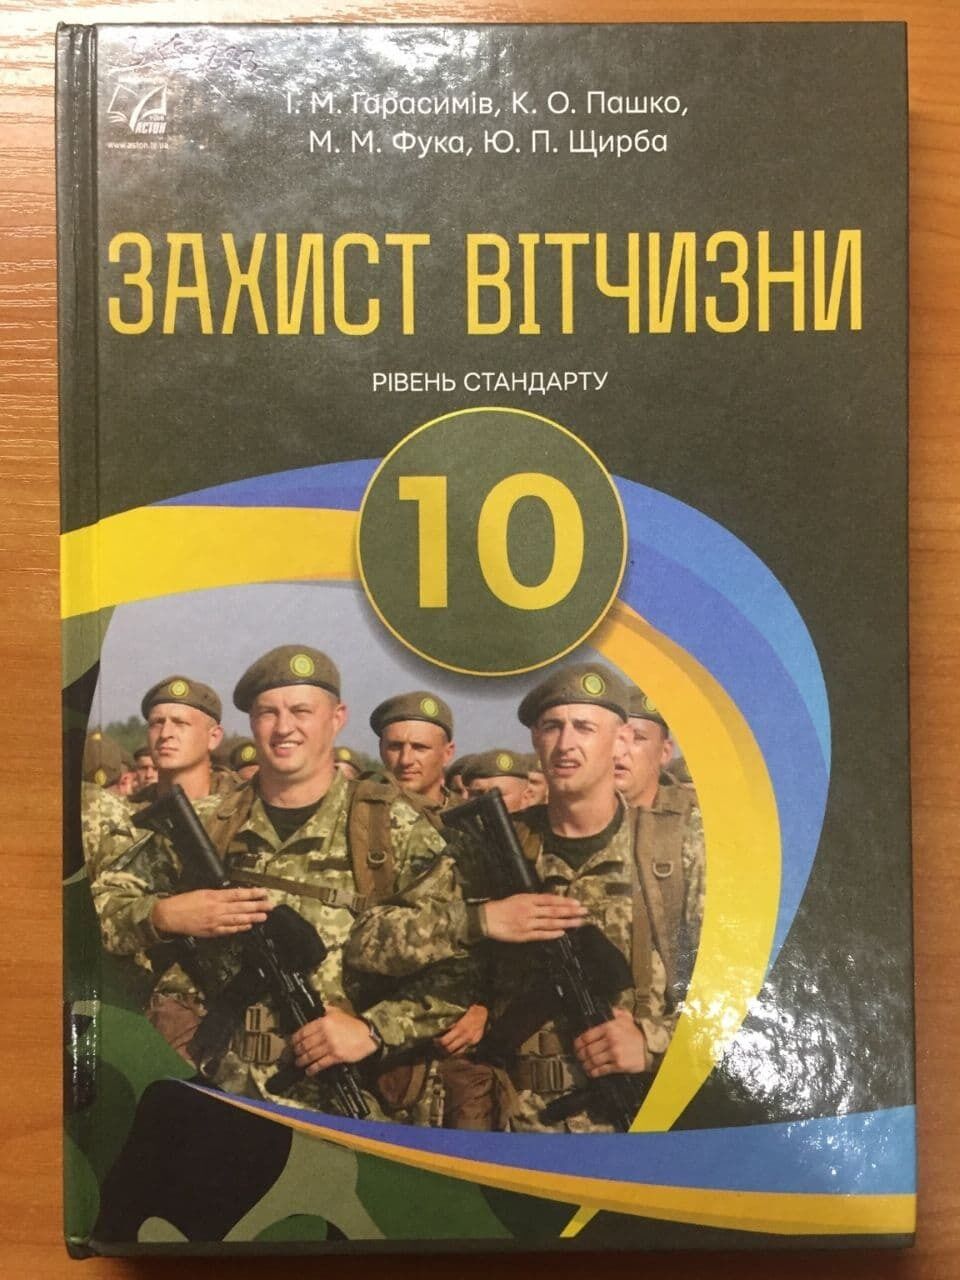 Підручник "Захист Вітчизни" для 10 класу української школи